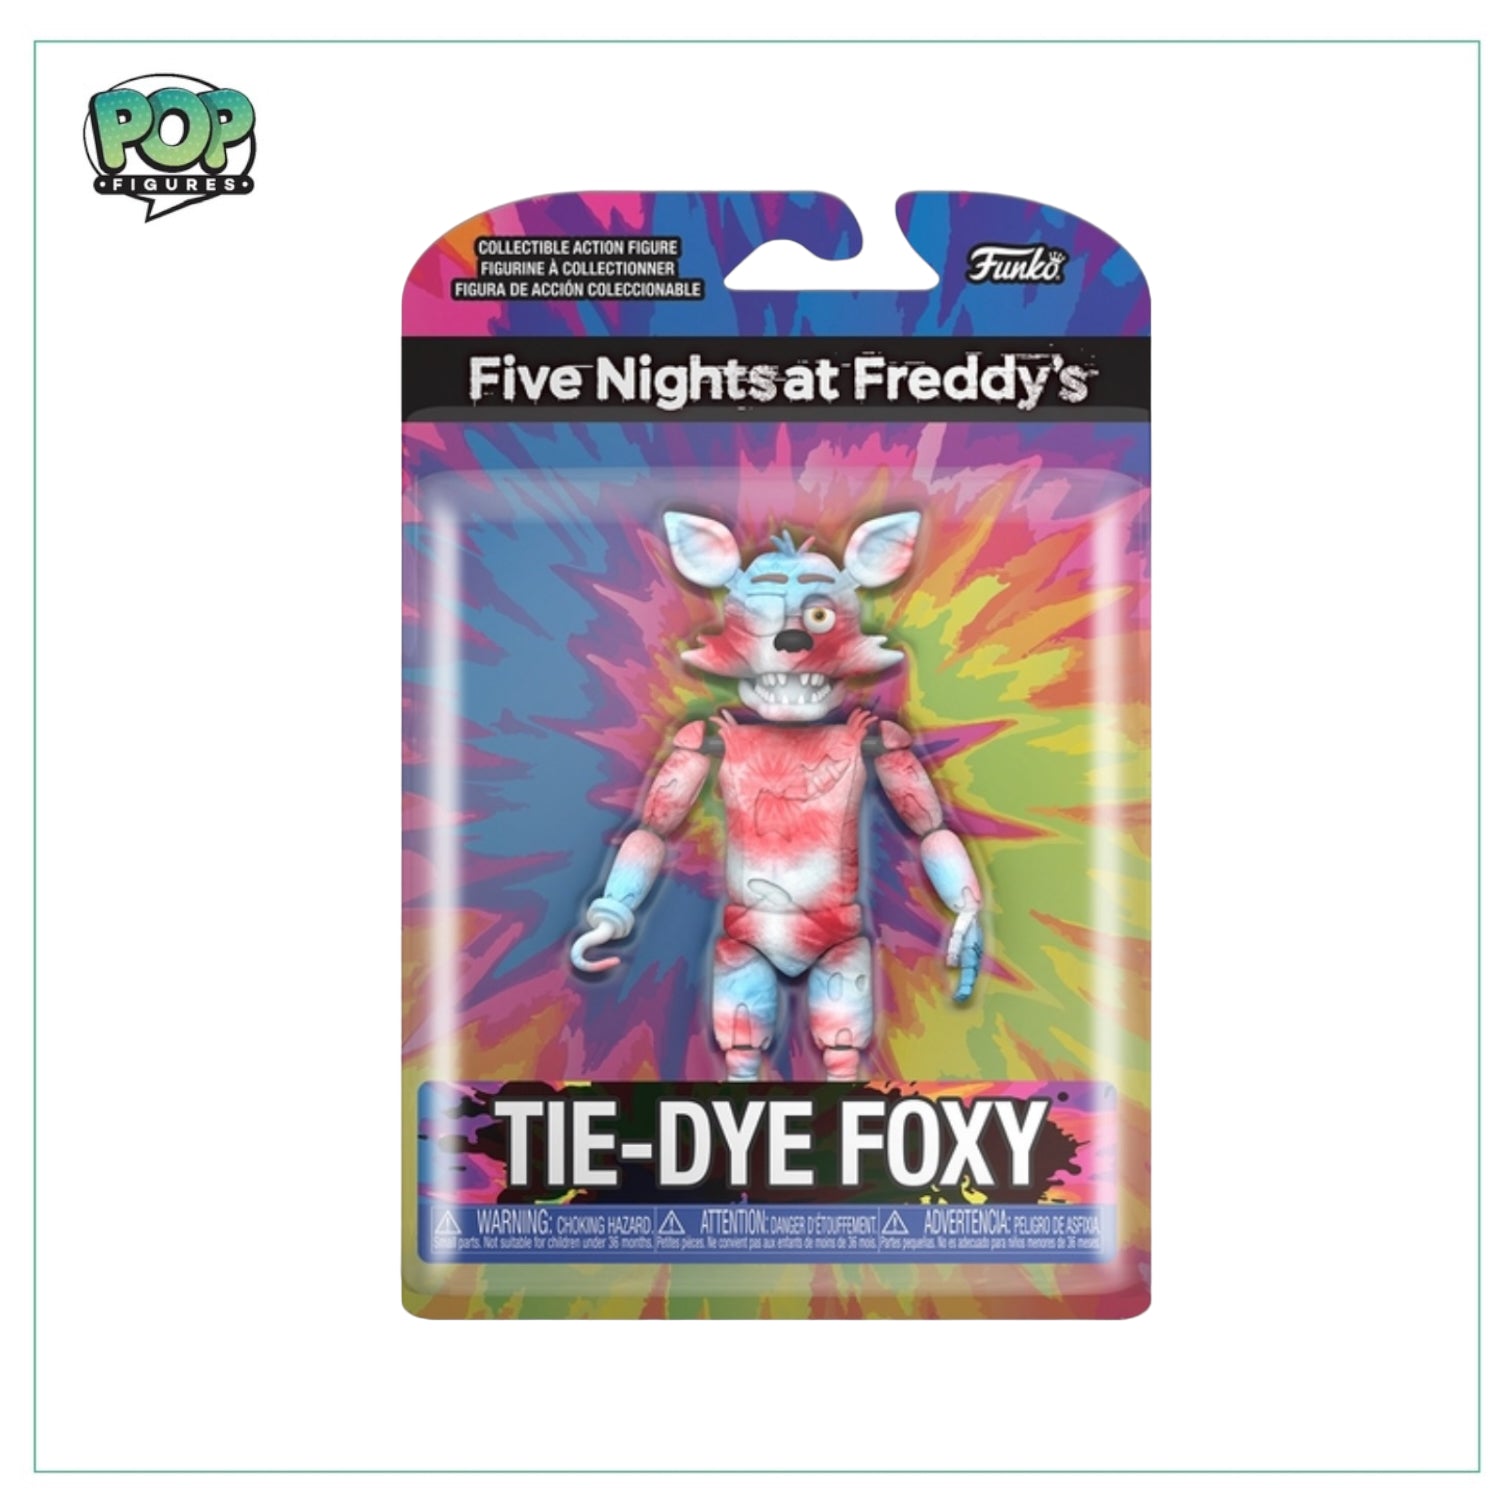 Tie-Dye Foxy 5” Funko Action Figure - Five Night At Freddy's